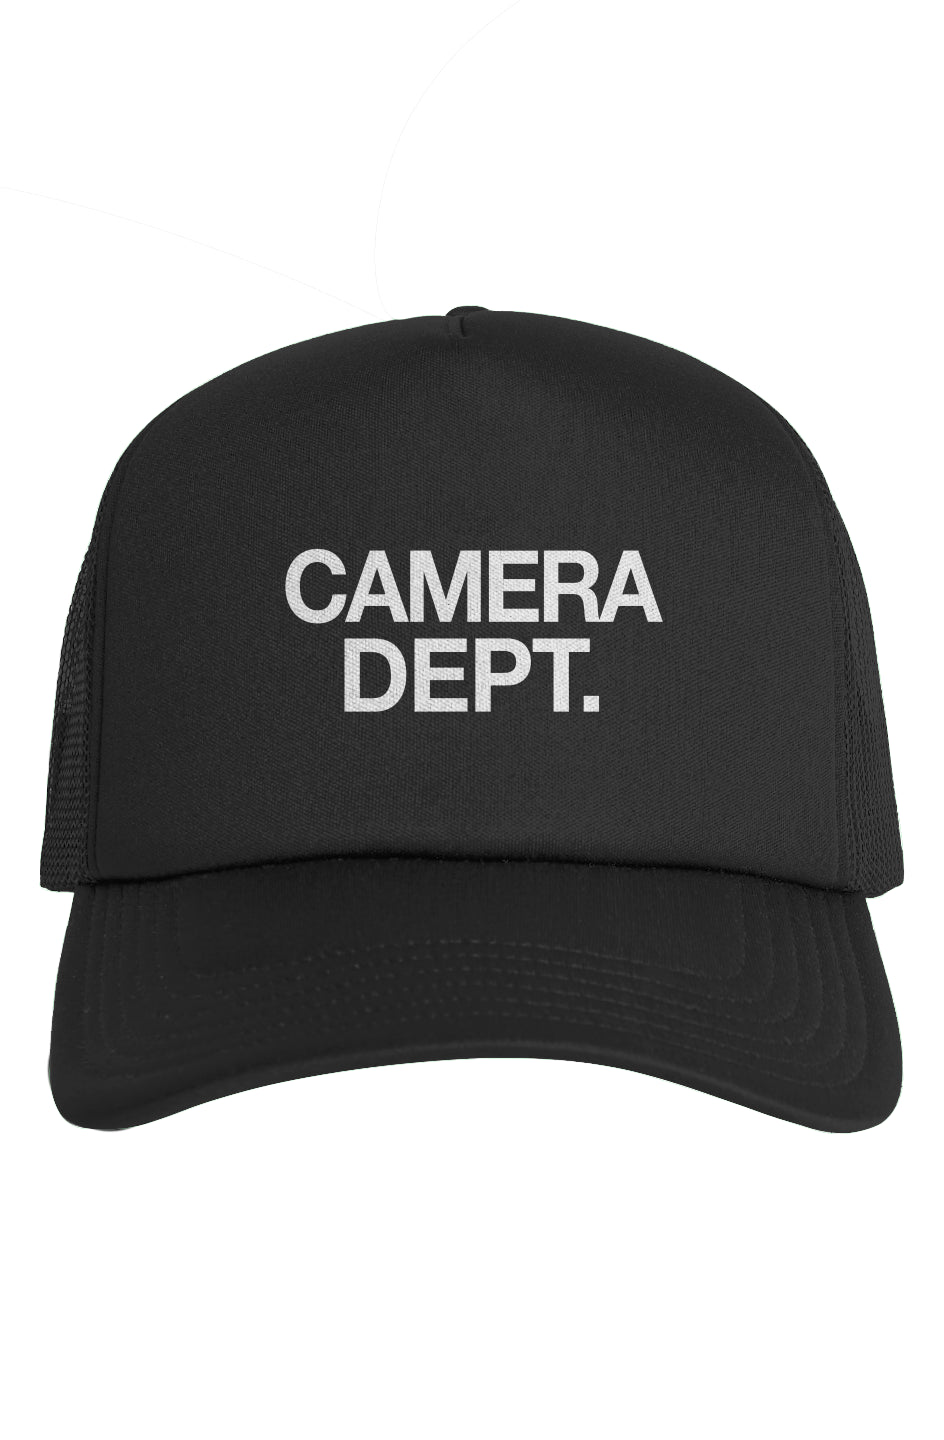 Camera Dept. Trucker Hat